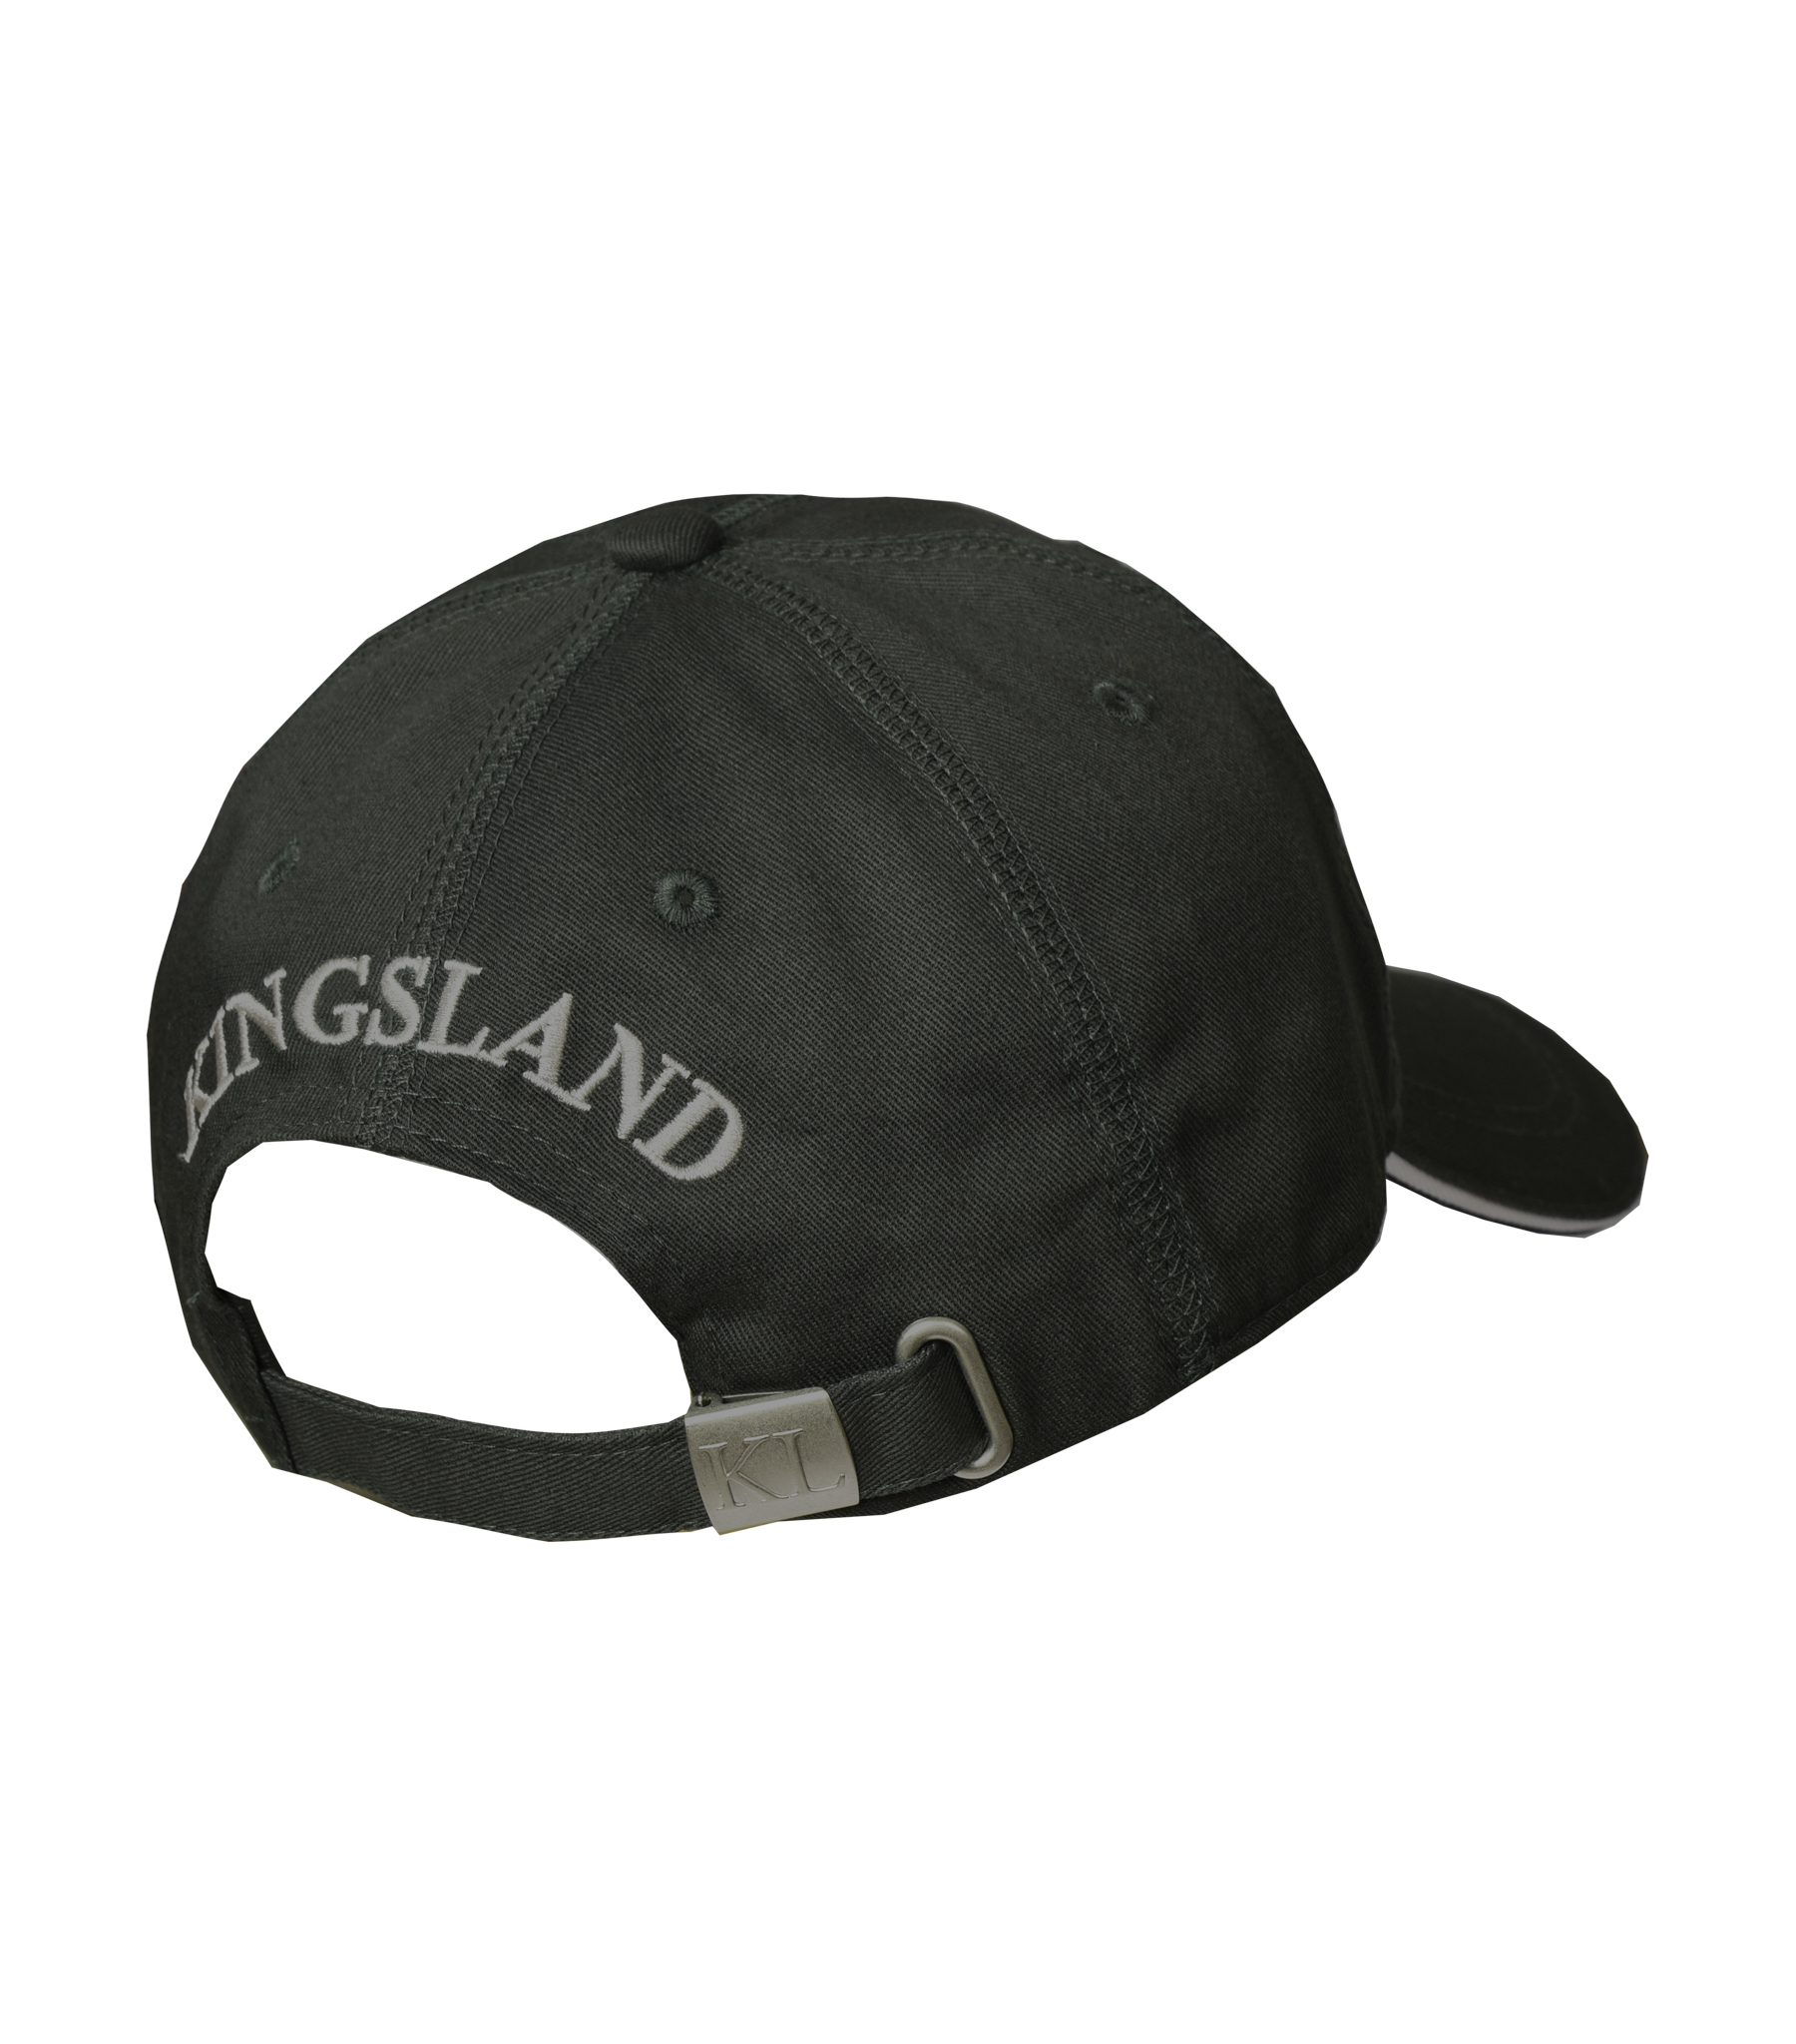 KINGSLAND Unisex Classic Limited Cap, Basecap - grey - onesize - 6